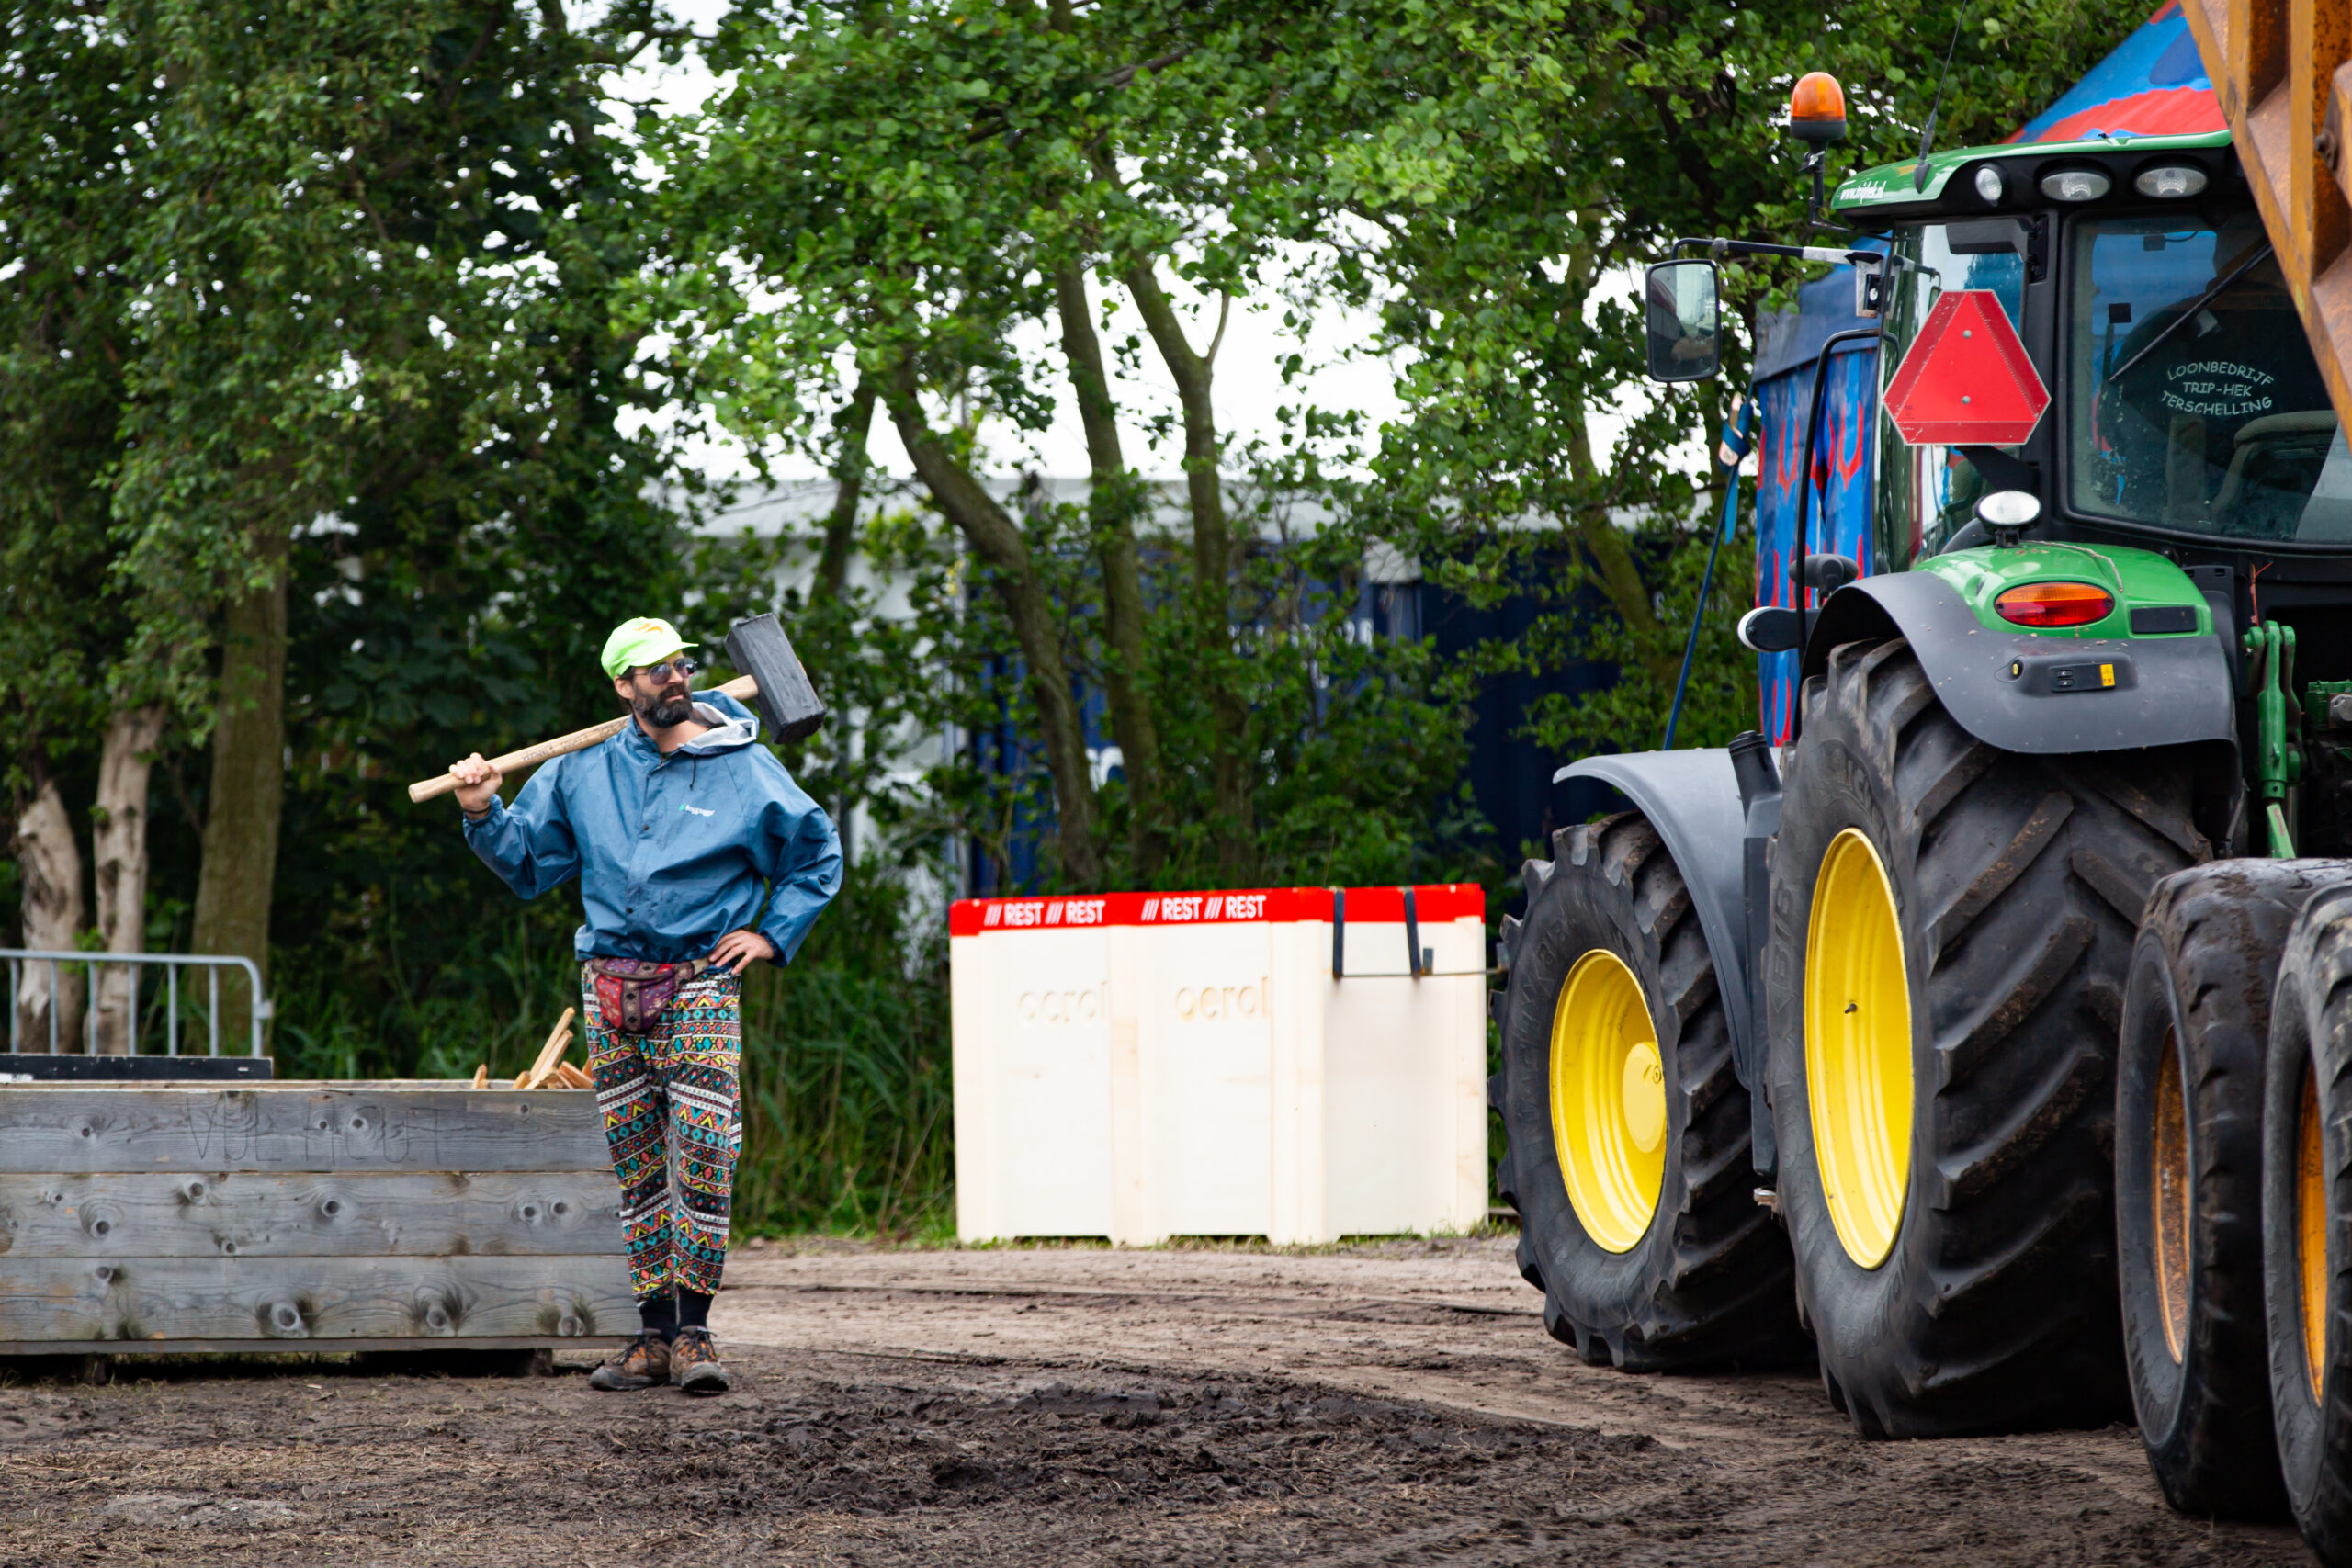 En man met een sloophamer en een tractor helpen bij de opbouw van voormalig festivalterrein de Westerkeyn op Oerol.